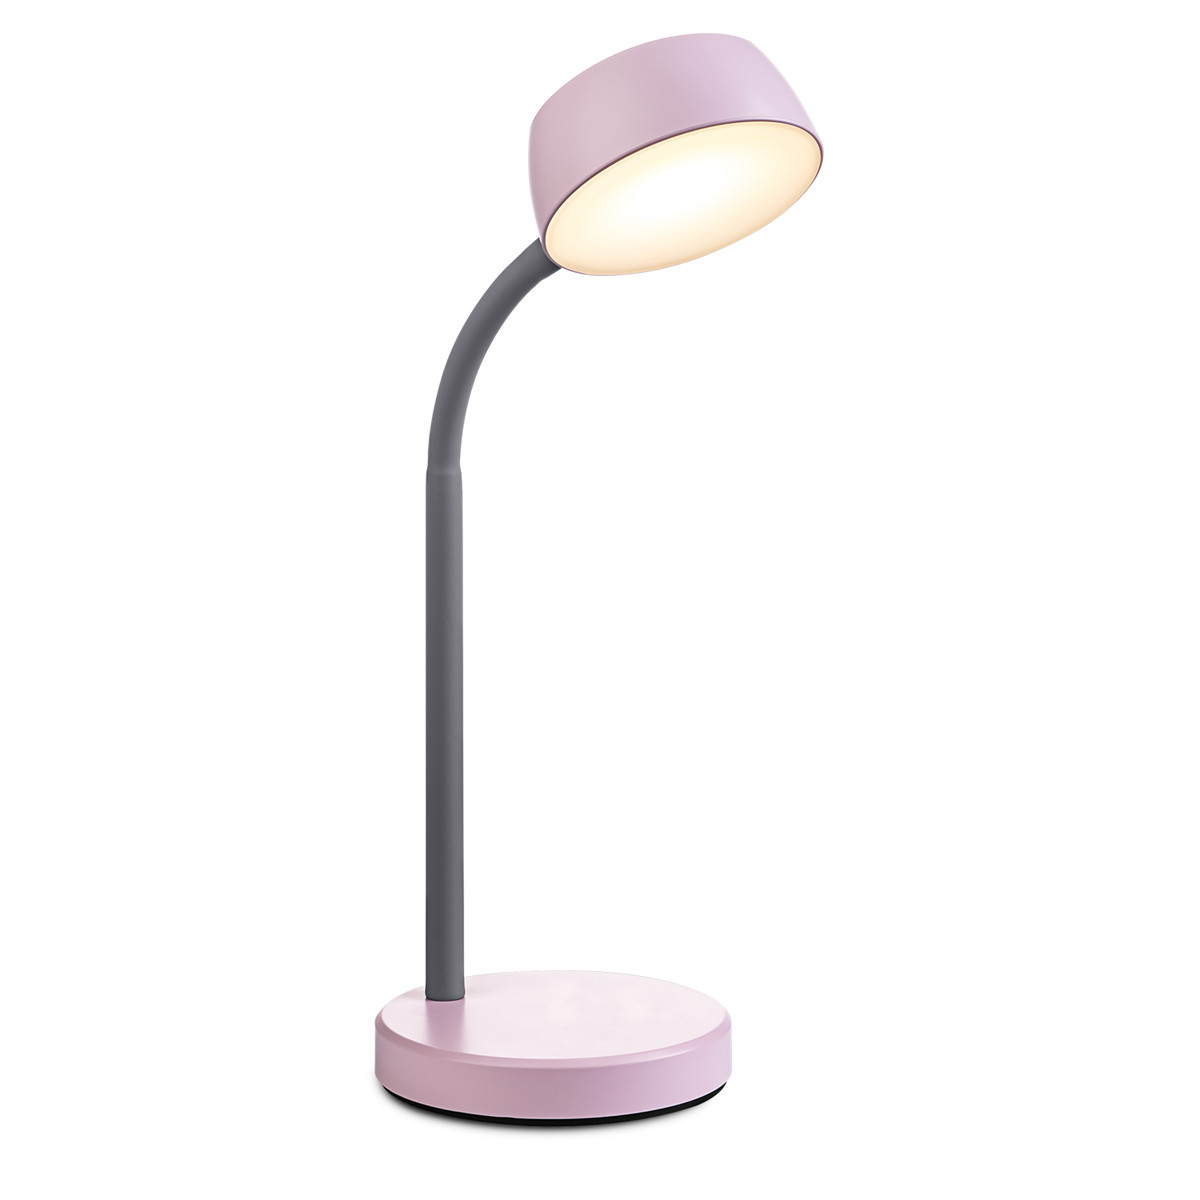 Light depot - bureaulamp College LED - office pink - Outlet